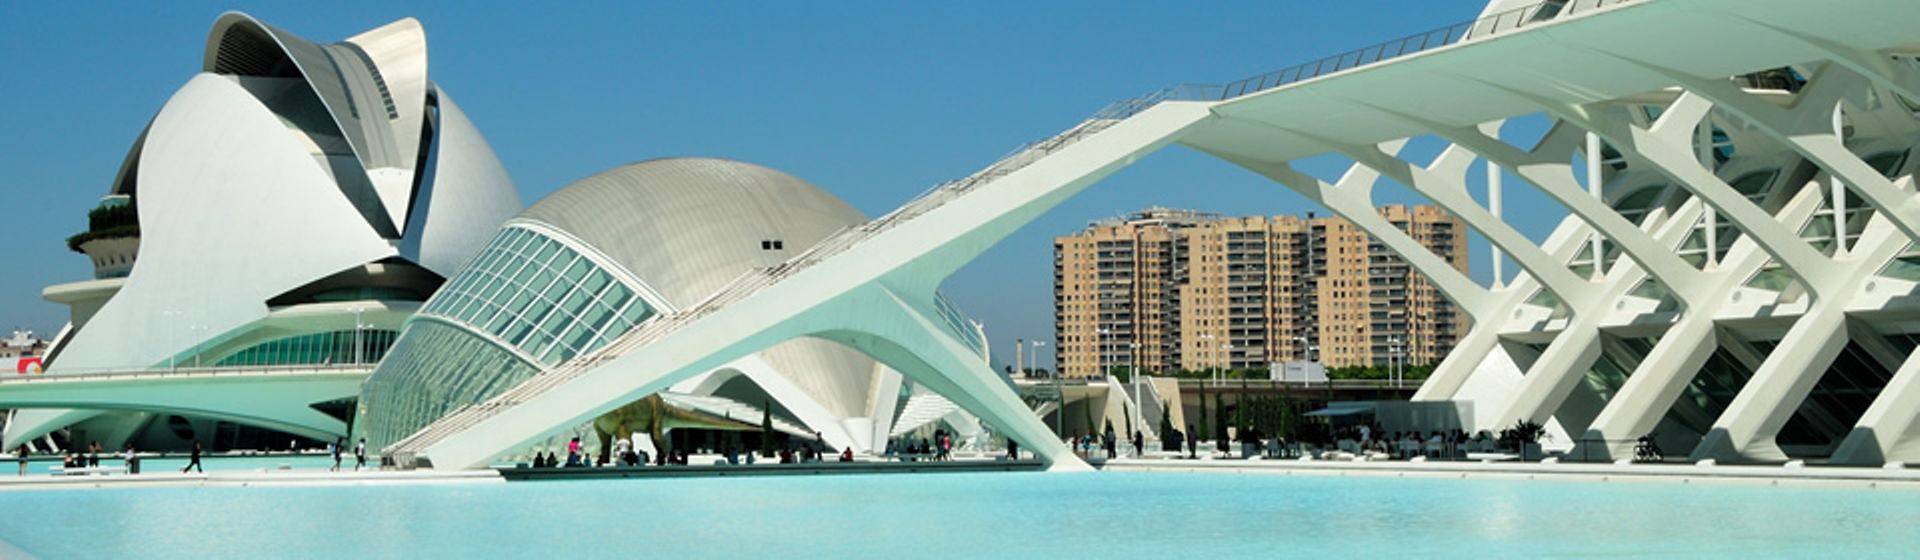 Holidays to Valencia Image